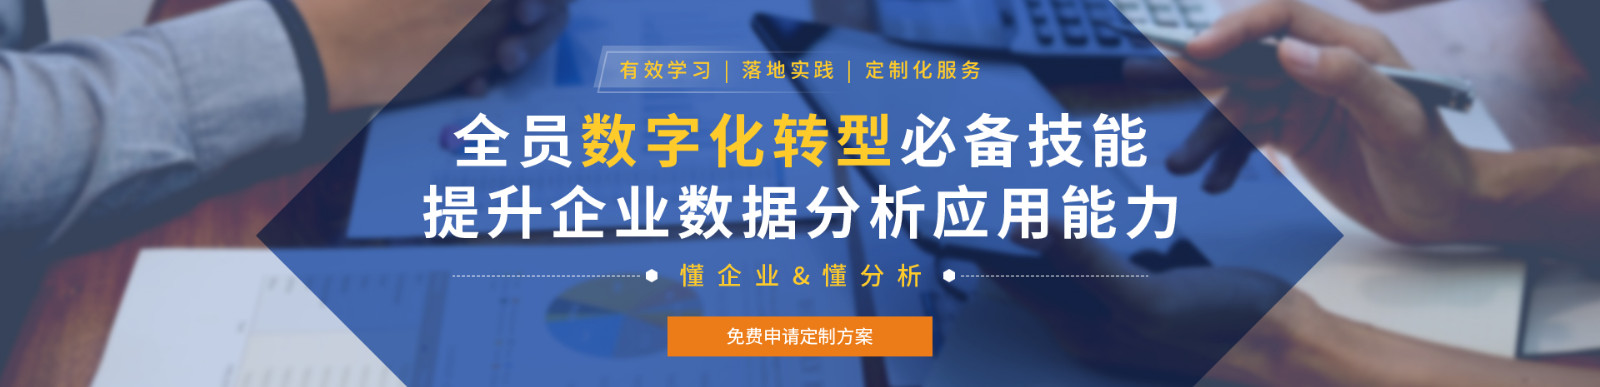 上海办公软件-Excel培训